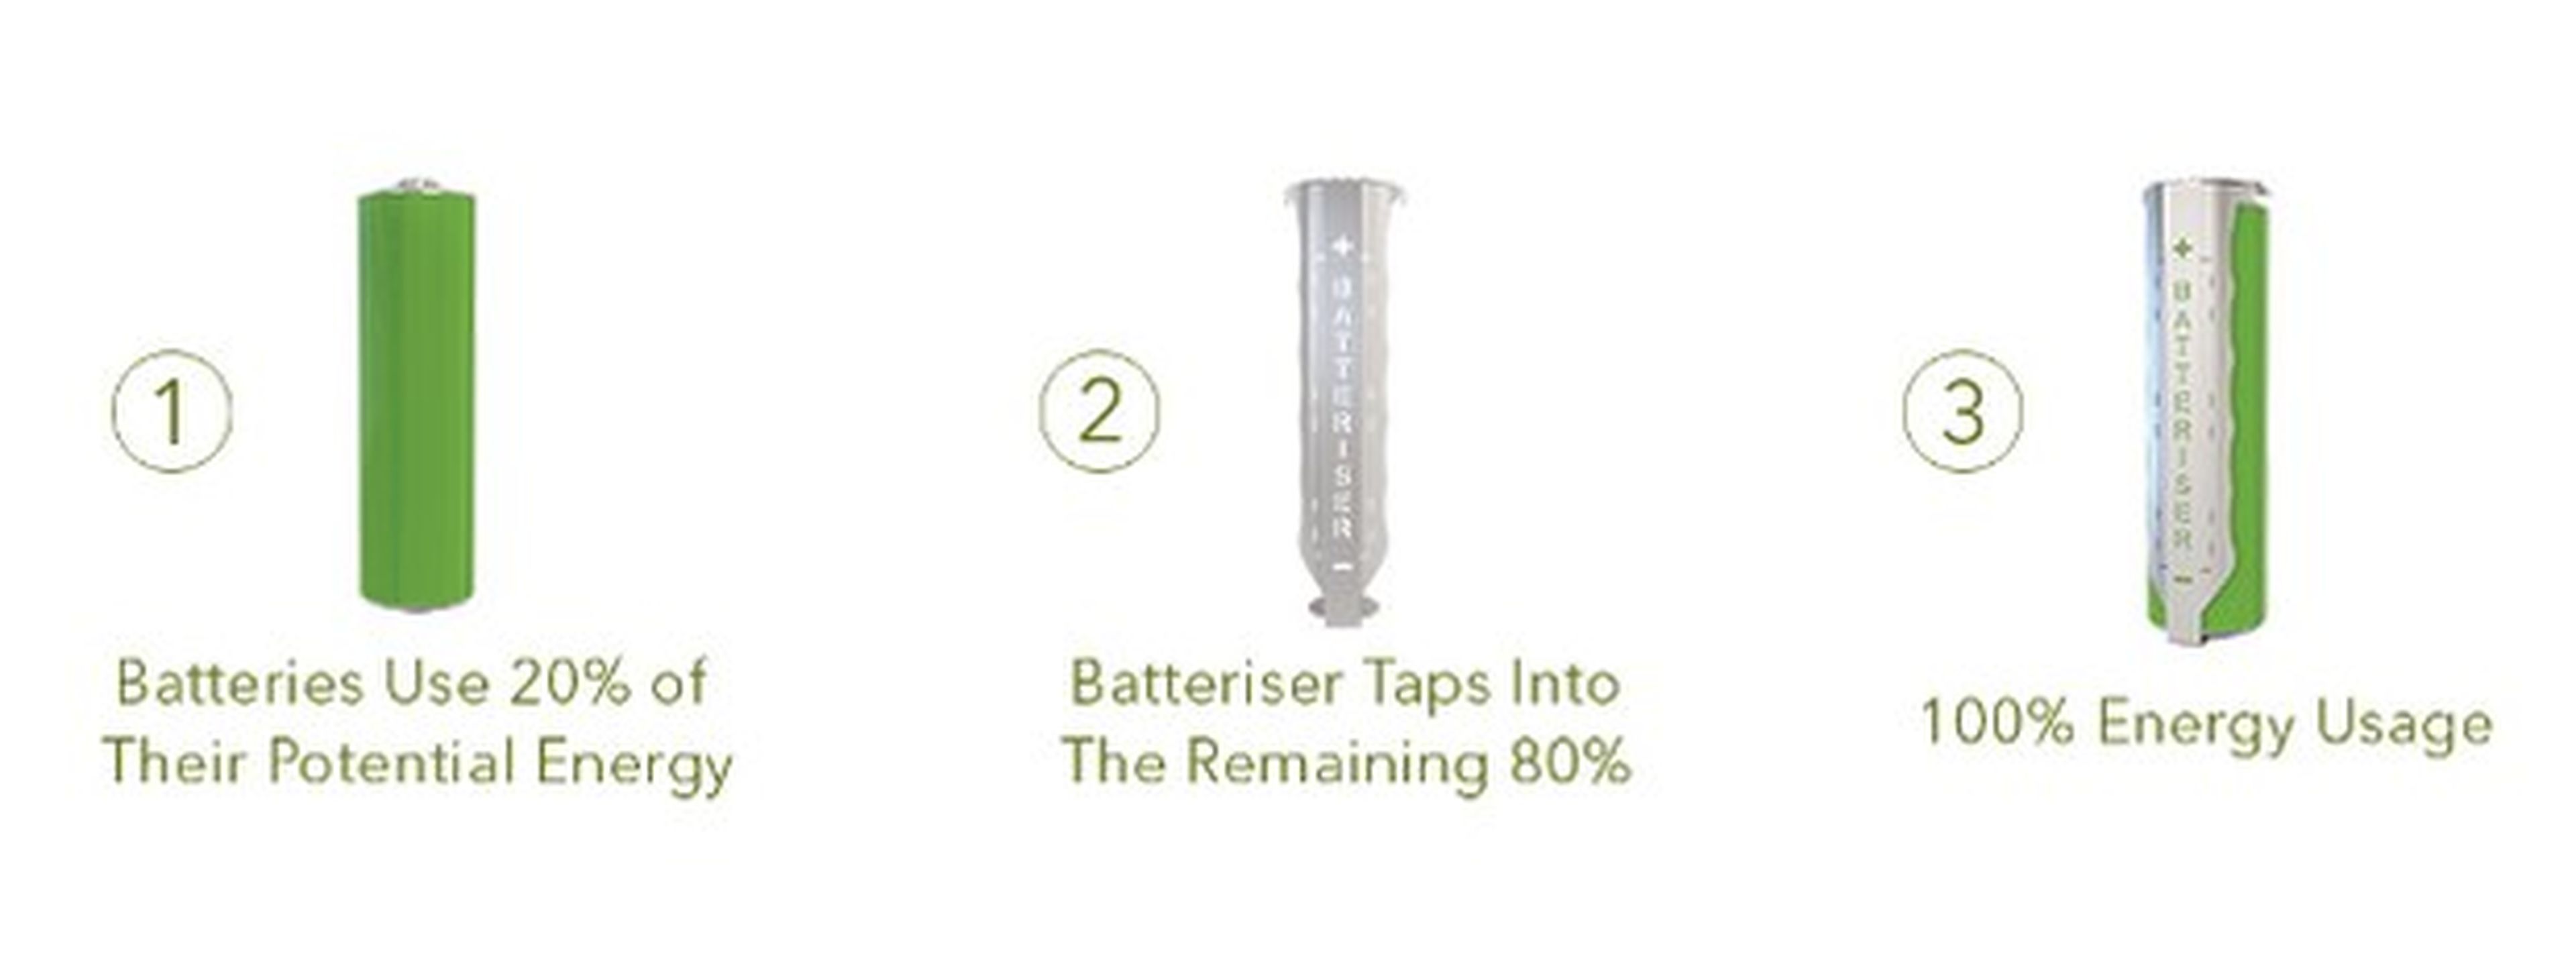 Batteriser aumenta la duración de las pilas